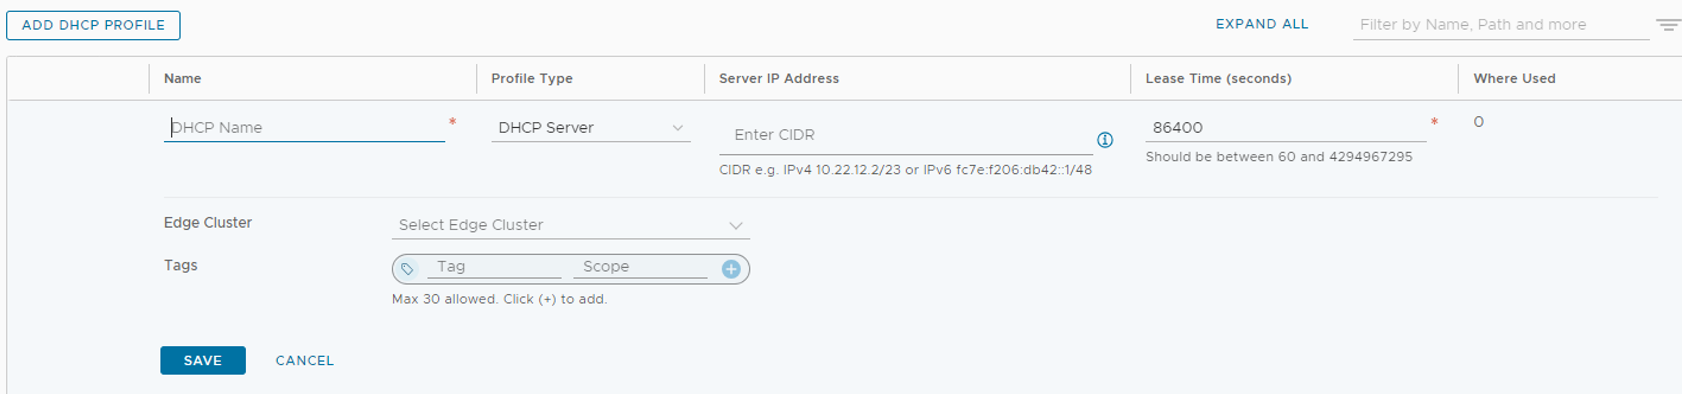 Captura de pantalla que muestra cómo agregar un perfil DHCP en el Administrador de NSX.